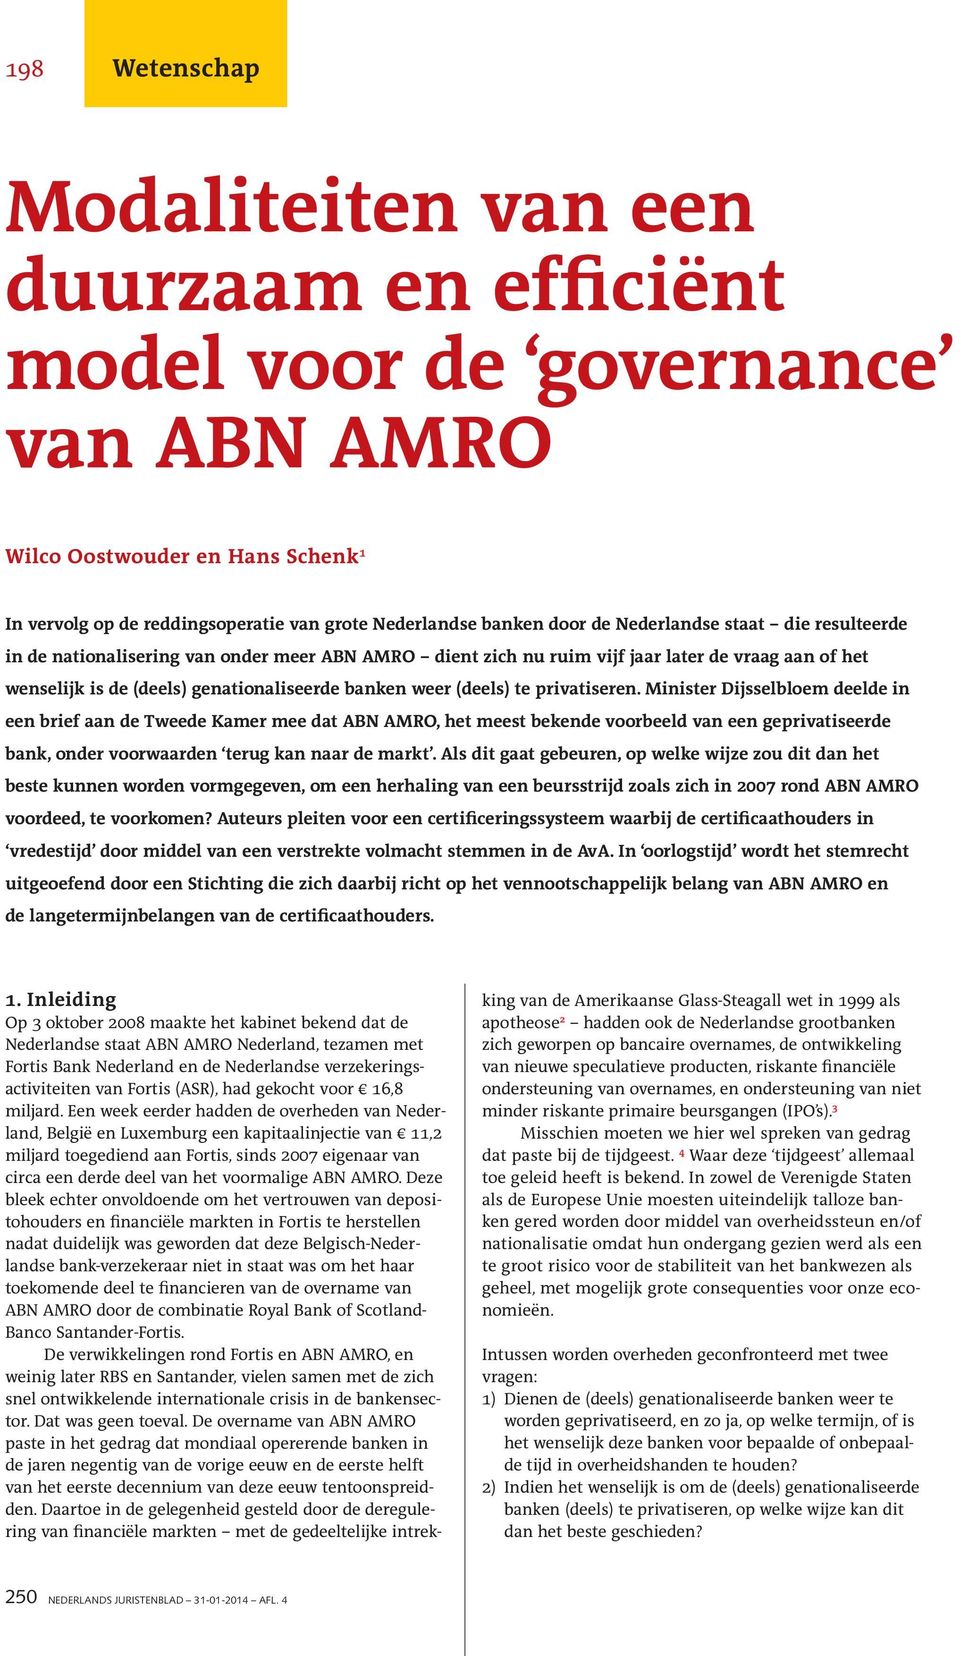 te privatiseren. Minister Dijsselbloem deelde in een brief aan de Tweede Kamer mee dat ABN AMRO, het meest bekende voorbeeld van een geprivatiseerde bank, onder voorwaarden terug kan naar de markt.